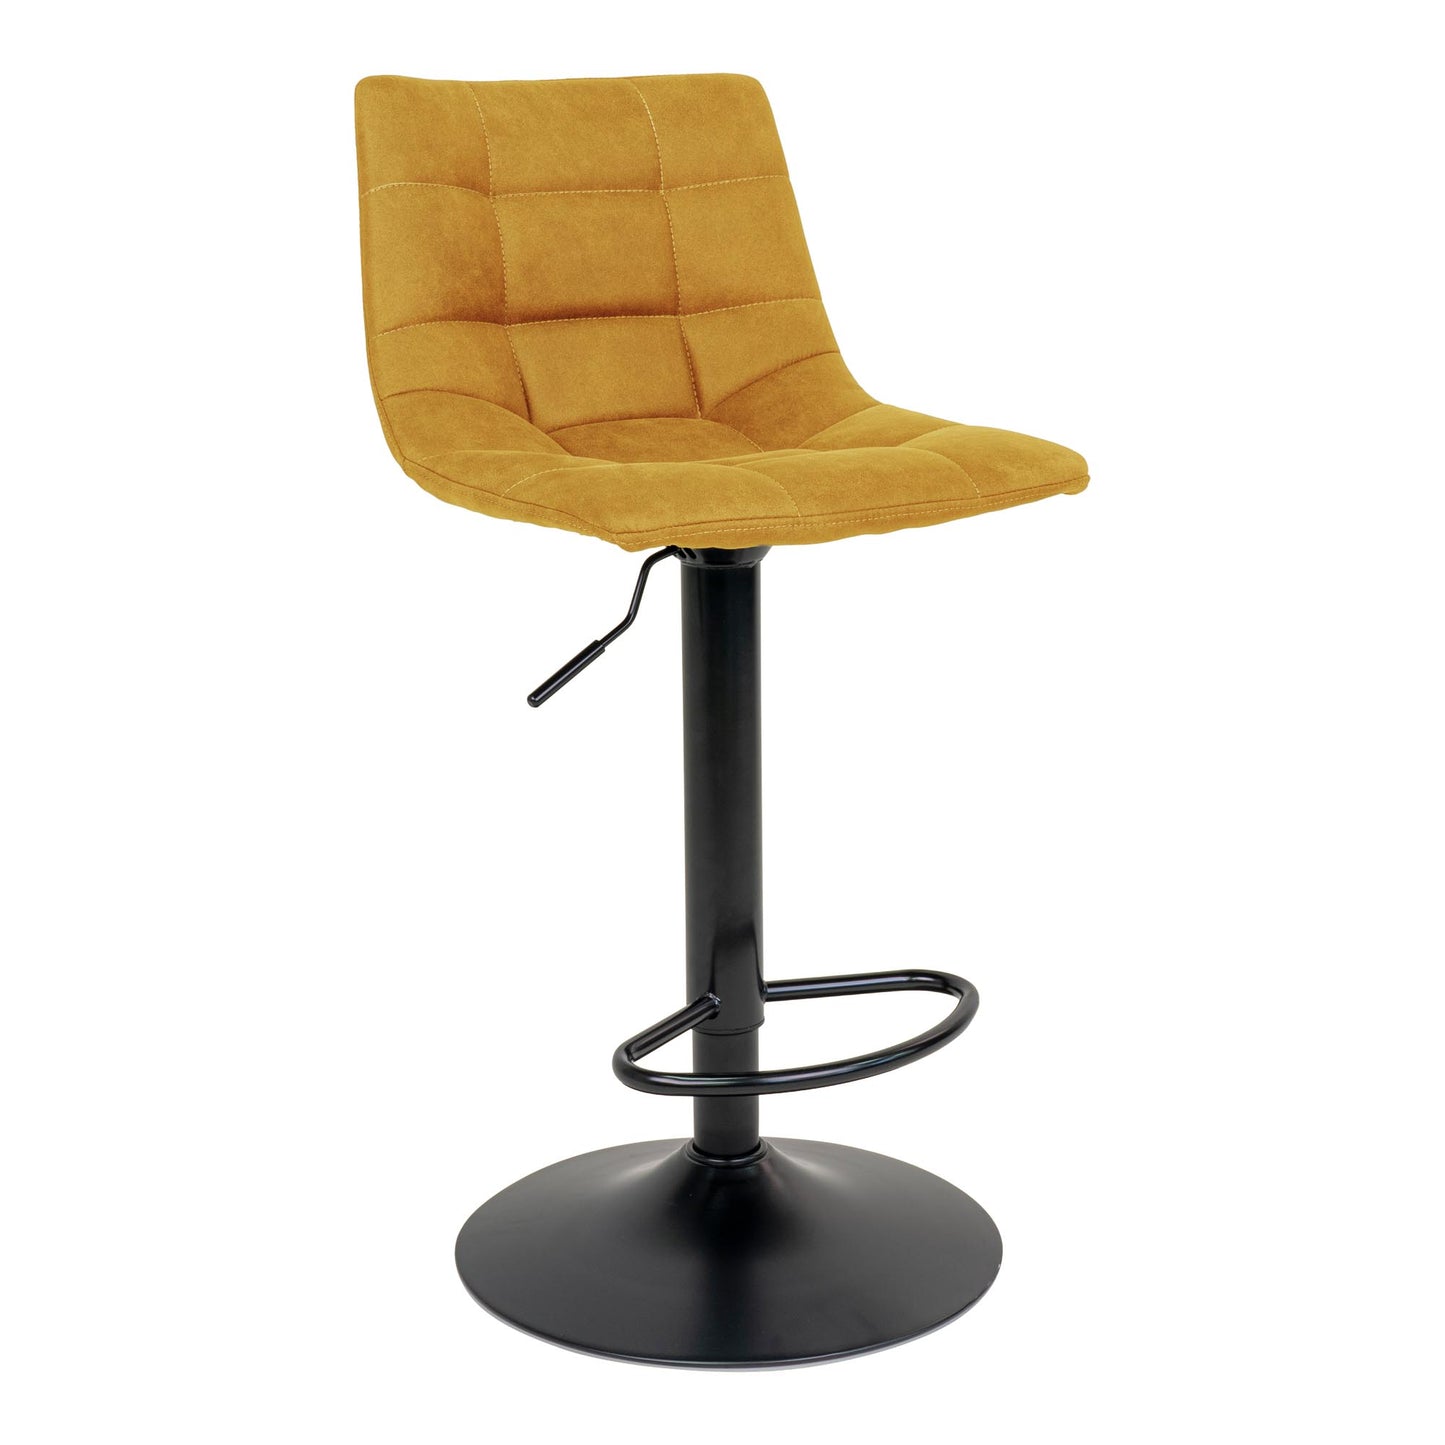 Middelfart Bar Chair - Barstoel in mosterdgeel met zwarte poten - set van 2-Stoel-House Nordic-middelfart-bar-chair-bar-chair-in-mustard-yellow-with-black-legs-1-barstoel, hoge stoel, MIN2, stoel-Barstoel in mosterdgeel met zwarte poten Materiaal Polyester fluweel, staal Kleur Mosterd Geel-5713917009404-1001303-Cerasus Homestyle